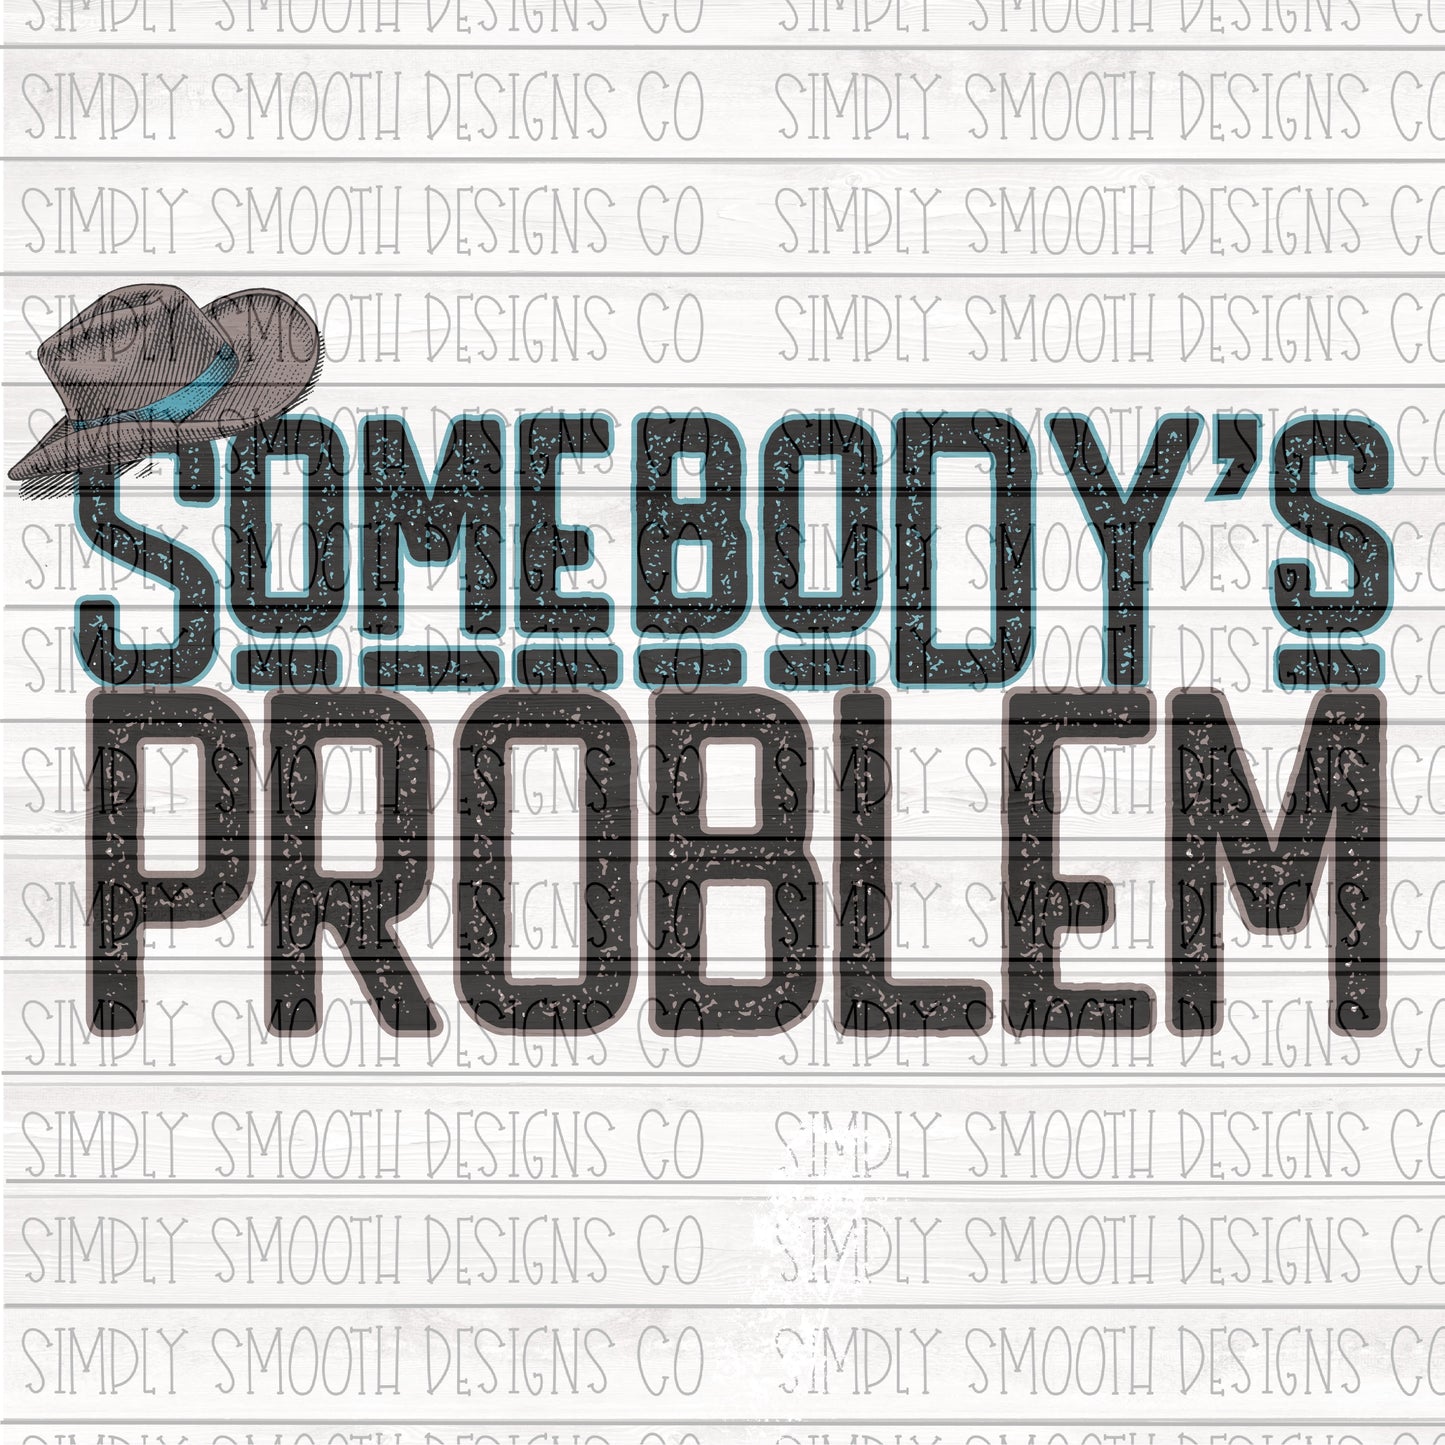 Somebody’s problem